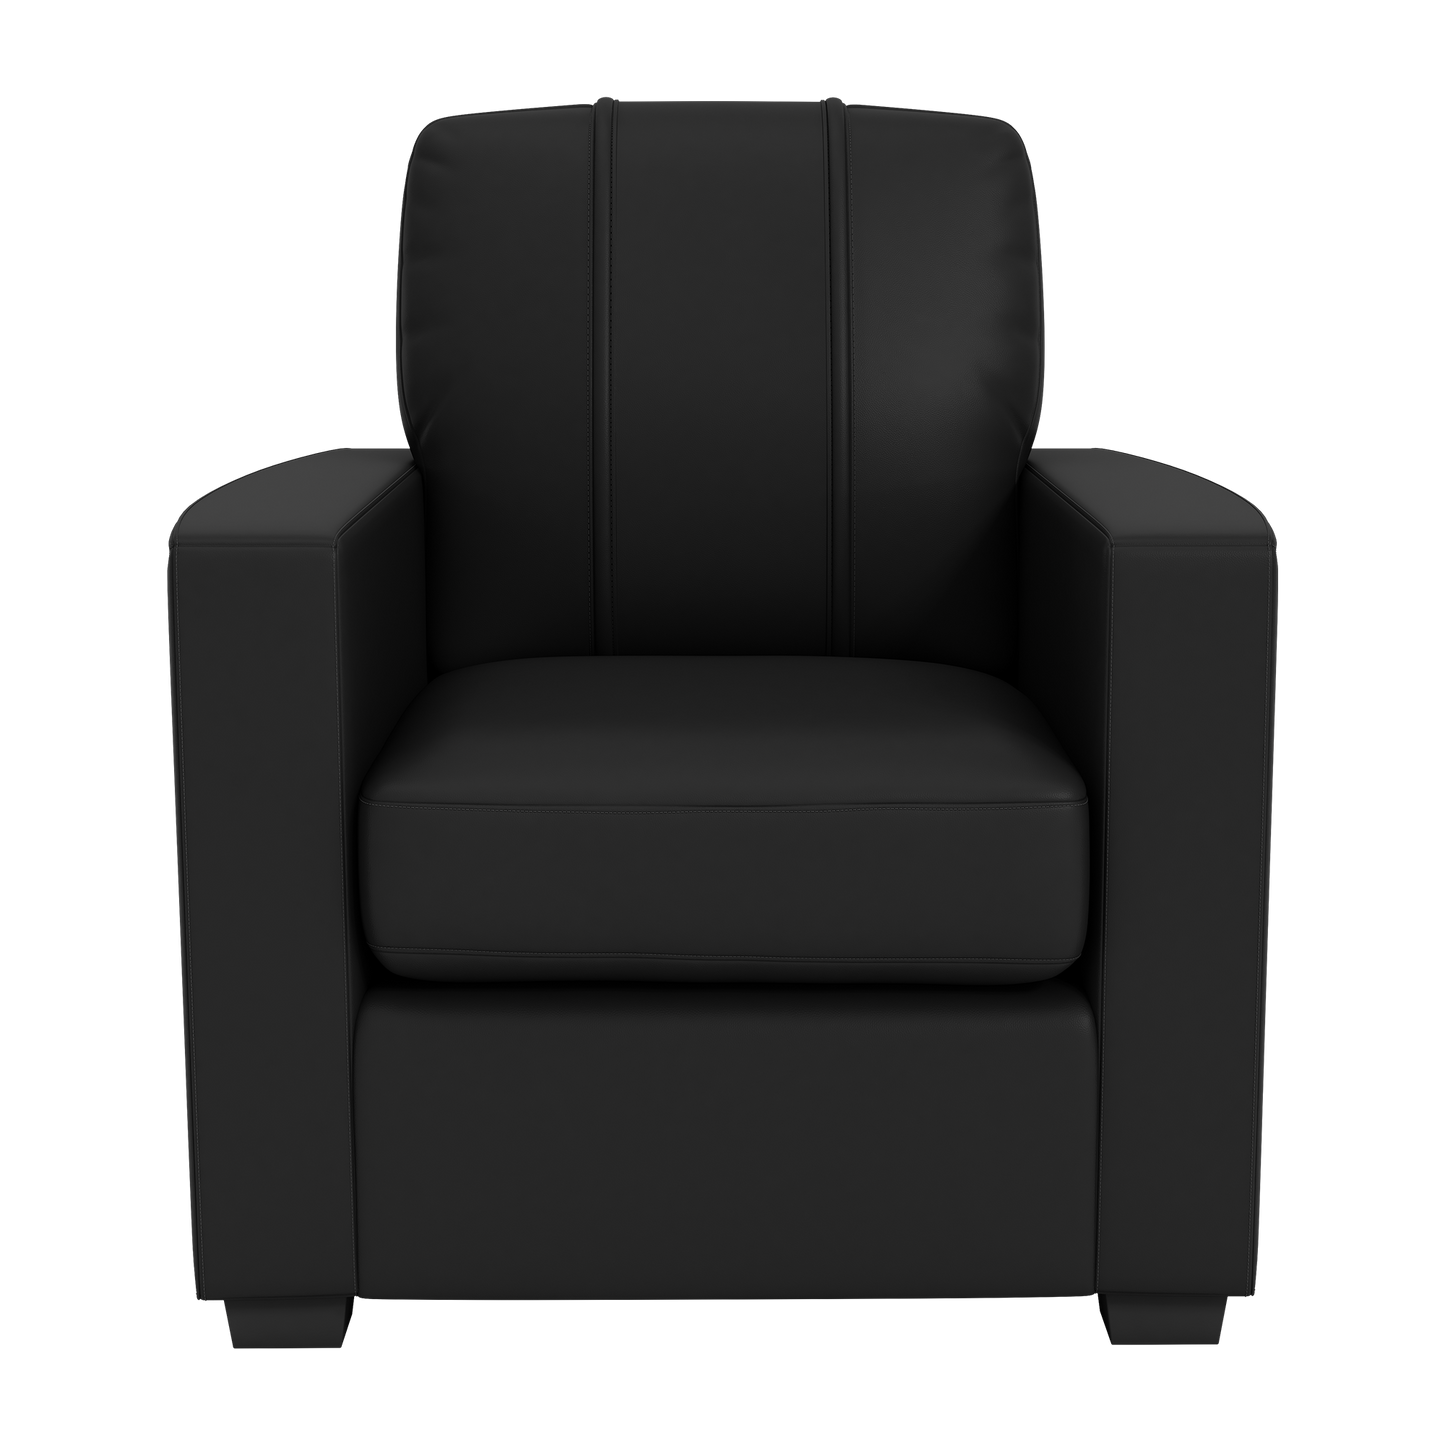 Silver Club Chair with FC Dallas Wordmark Logo